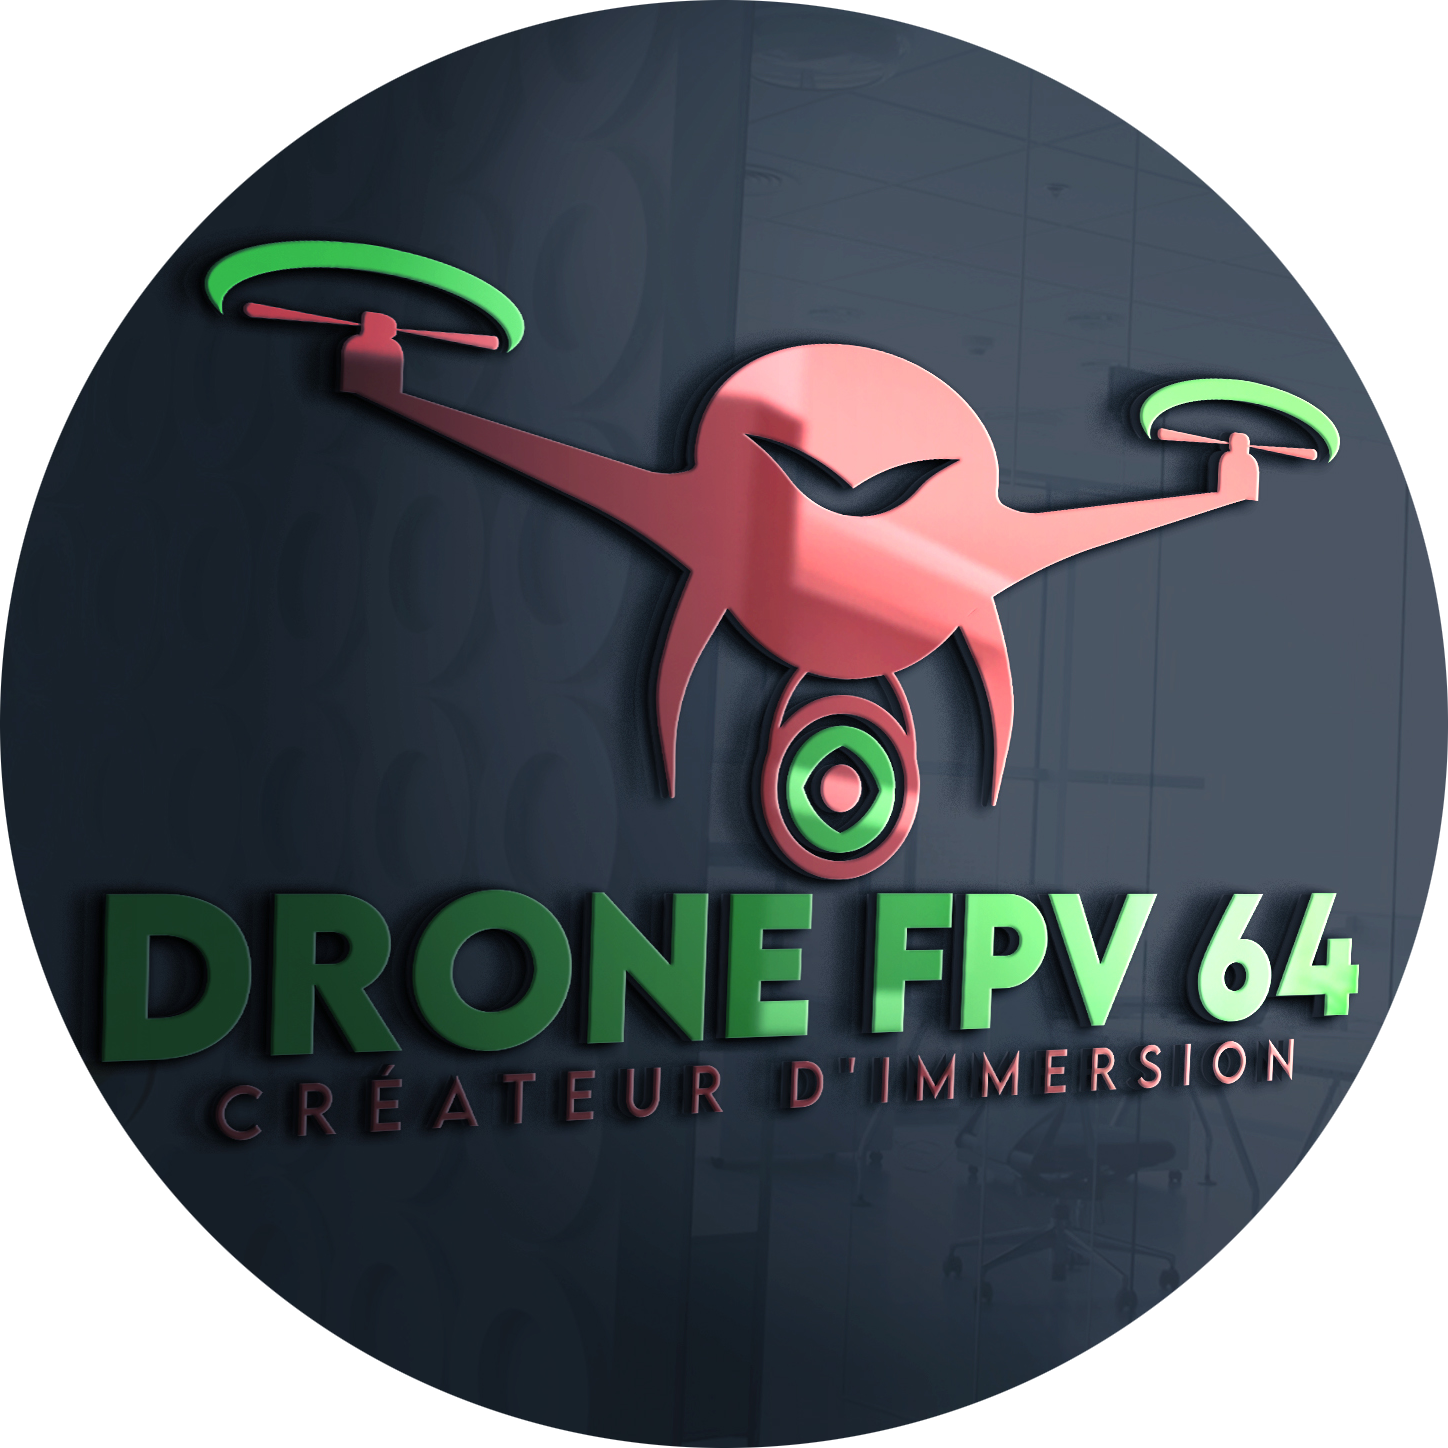 DRONE FPV 64